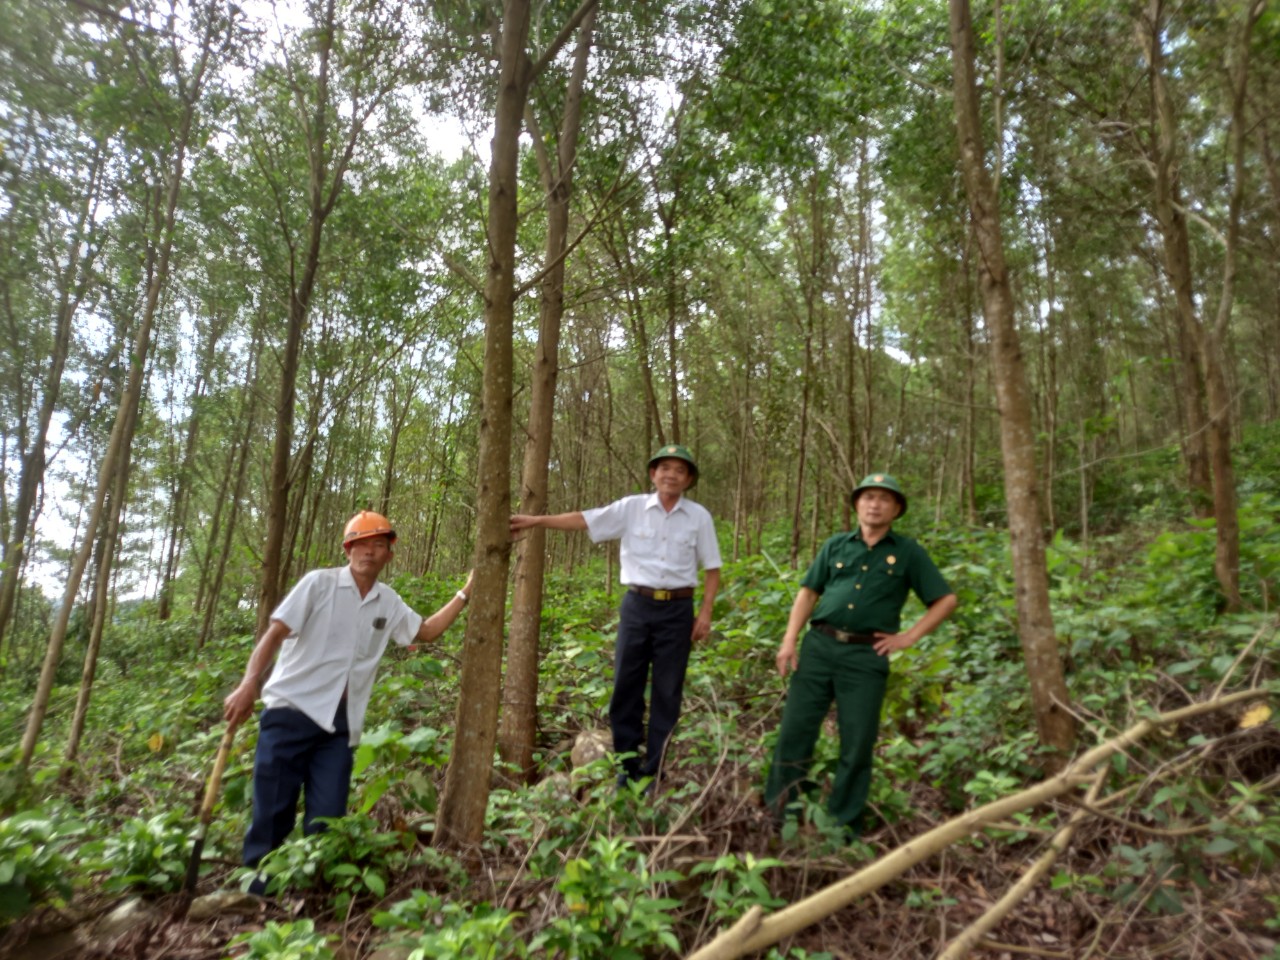 Sau 8 năm miệt mài, hiện ông Bình (ngoài cùng bên trái) đã có trong tay tới 55ha rừng keo lá tràm, trong đó đã có những diện tích cho thu hoạch. Ảnh: Lê Cương.